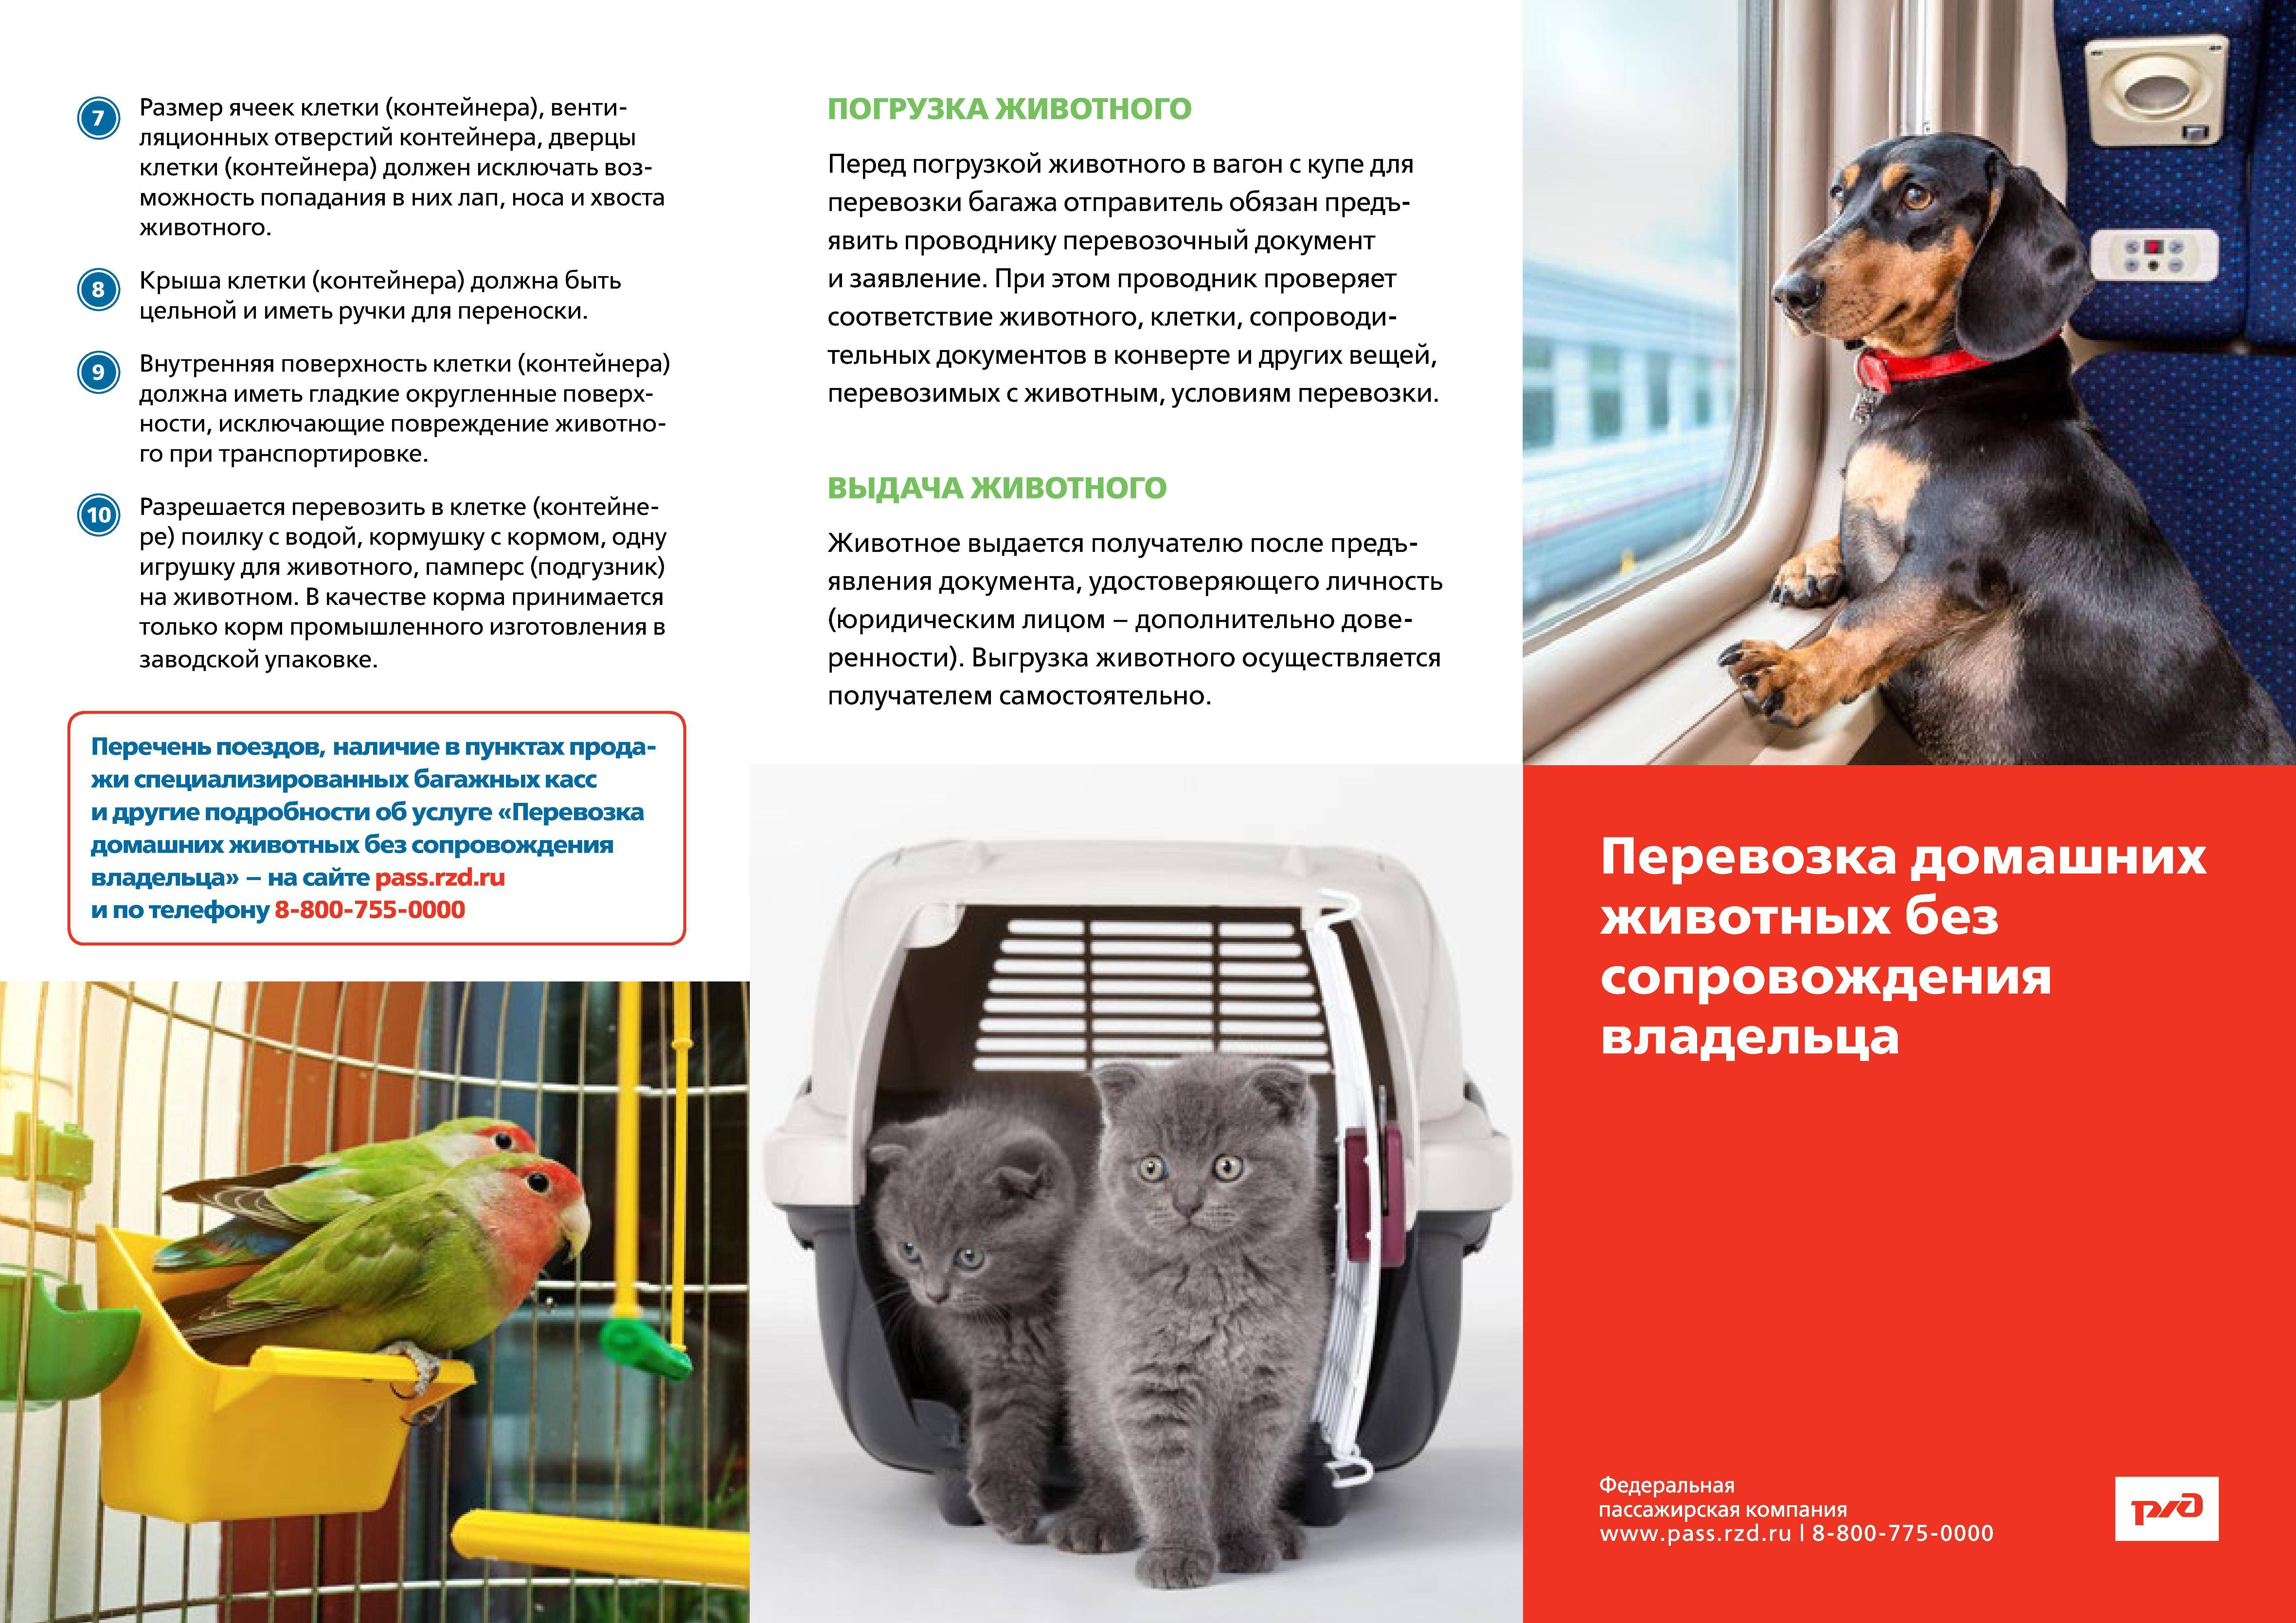 Как в россии перевозят собак в поездах – скоростных, дальнего следования и электричках: правила провоза и документы